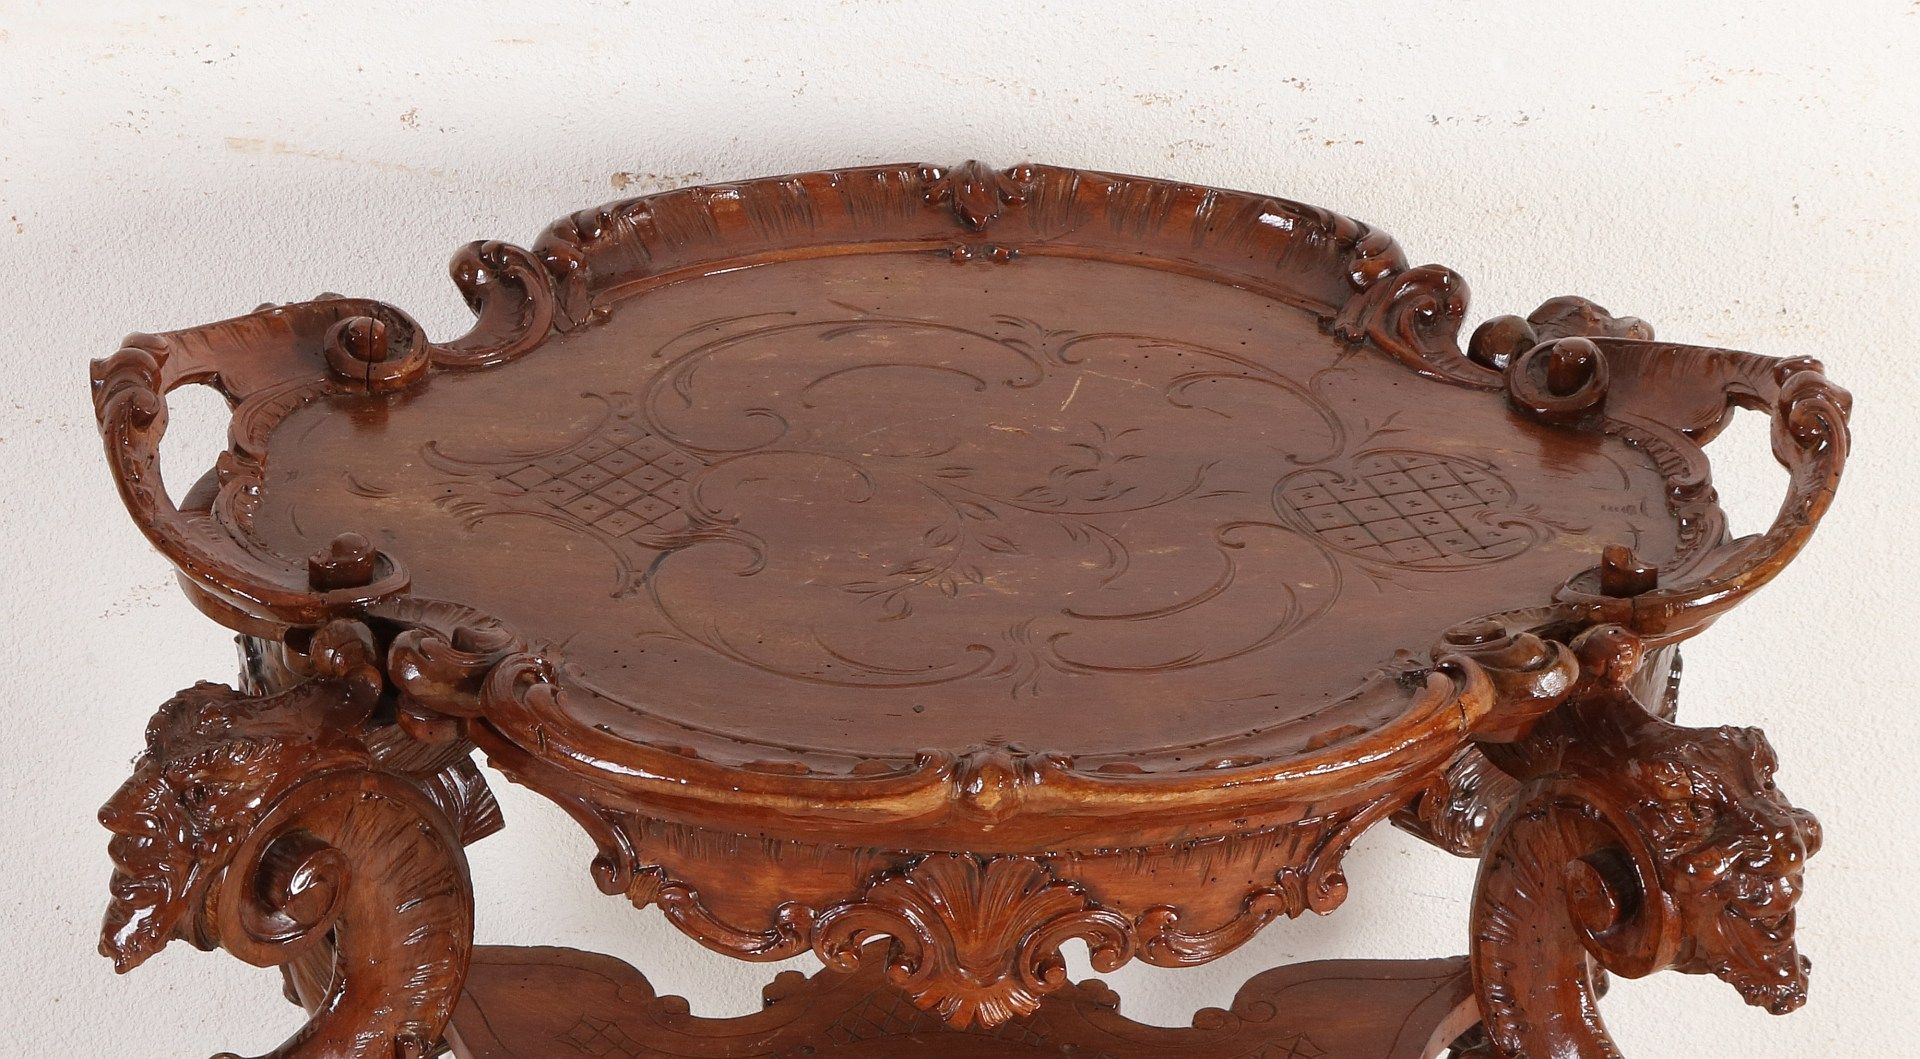 Geschnitzter Etagere-Tisch aus französischem Walnussholz aus dem 19. Jahrhundert mit herausnehmbar - Bild 2 aus 2